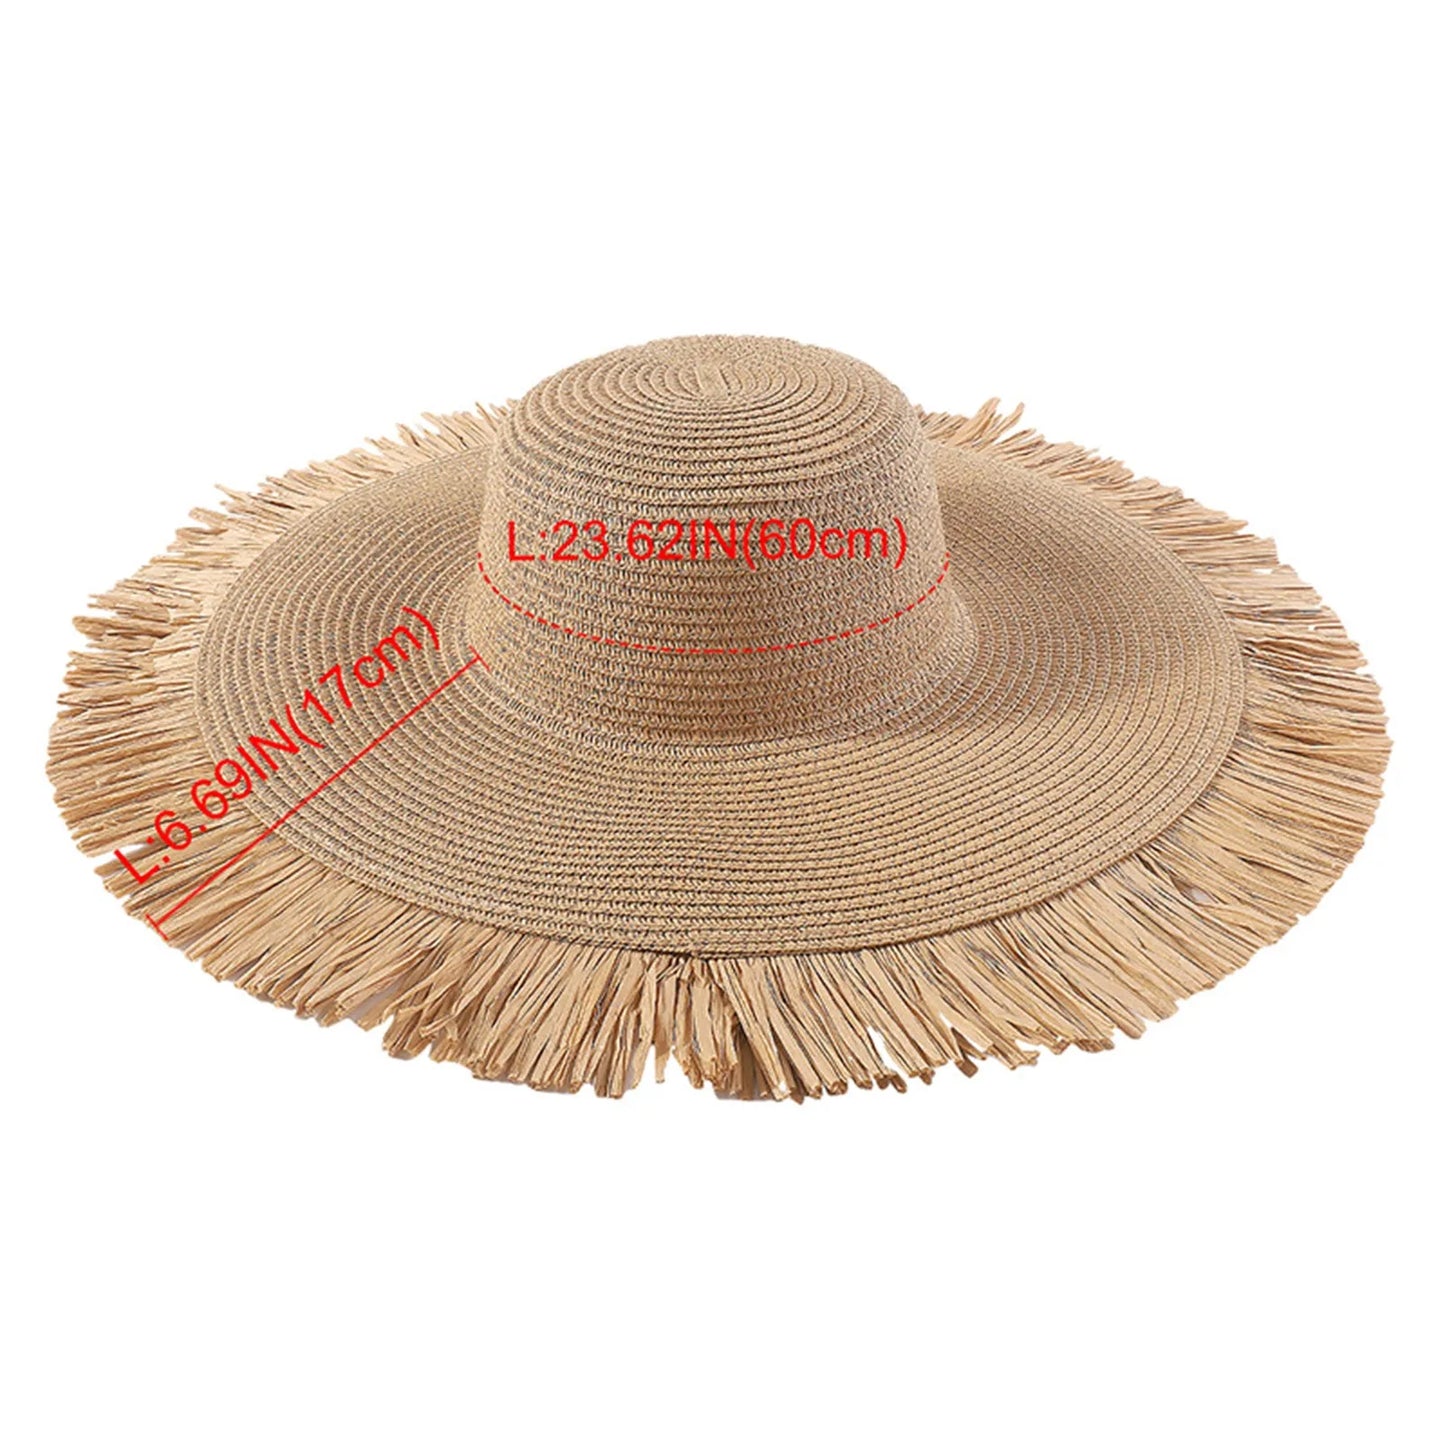 Moda femenina bohemio verano al aire libre ben bosque sombrero de solas vacaciones casuales gat de playa tejida paja gorda femenina f i e n d s gorro